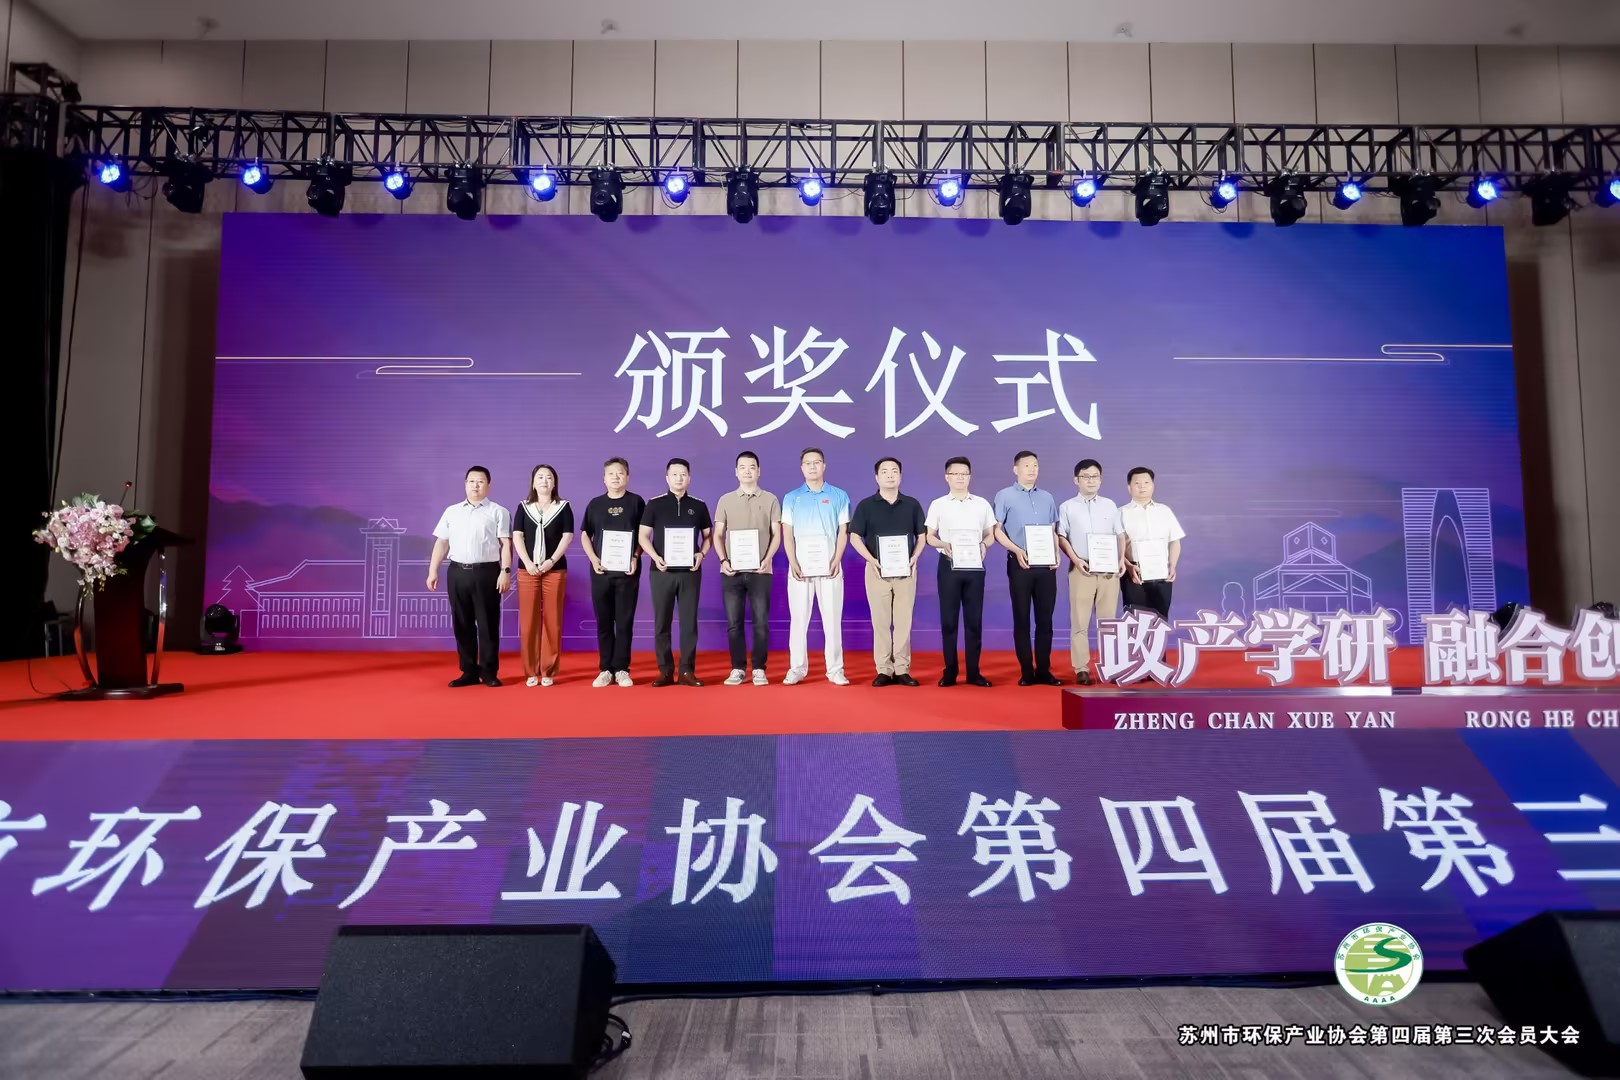 Perlindungan Lingkungan Liding memenangkan Penghargaan Manajemen Tingkat Lanjut Industri Perlindungan Lingkungan Suzhou dan gelar Manajer Luar Biasa